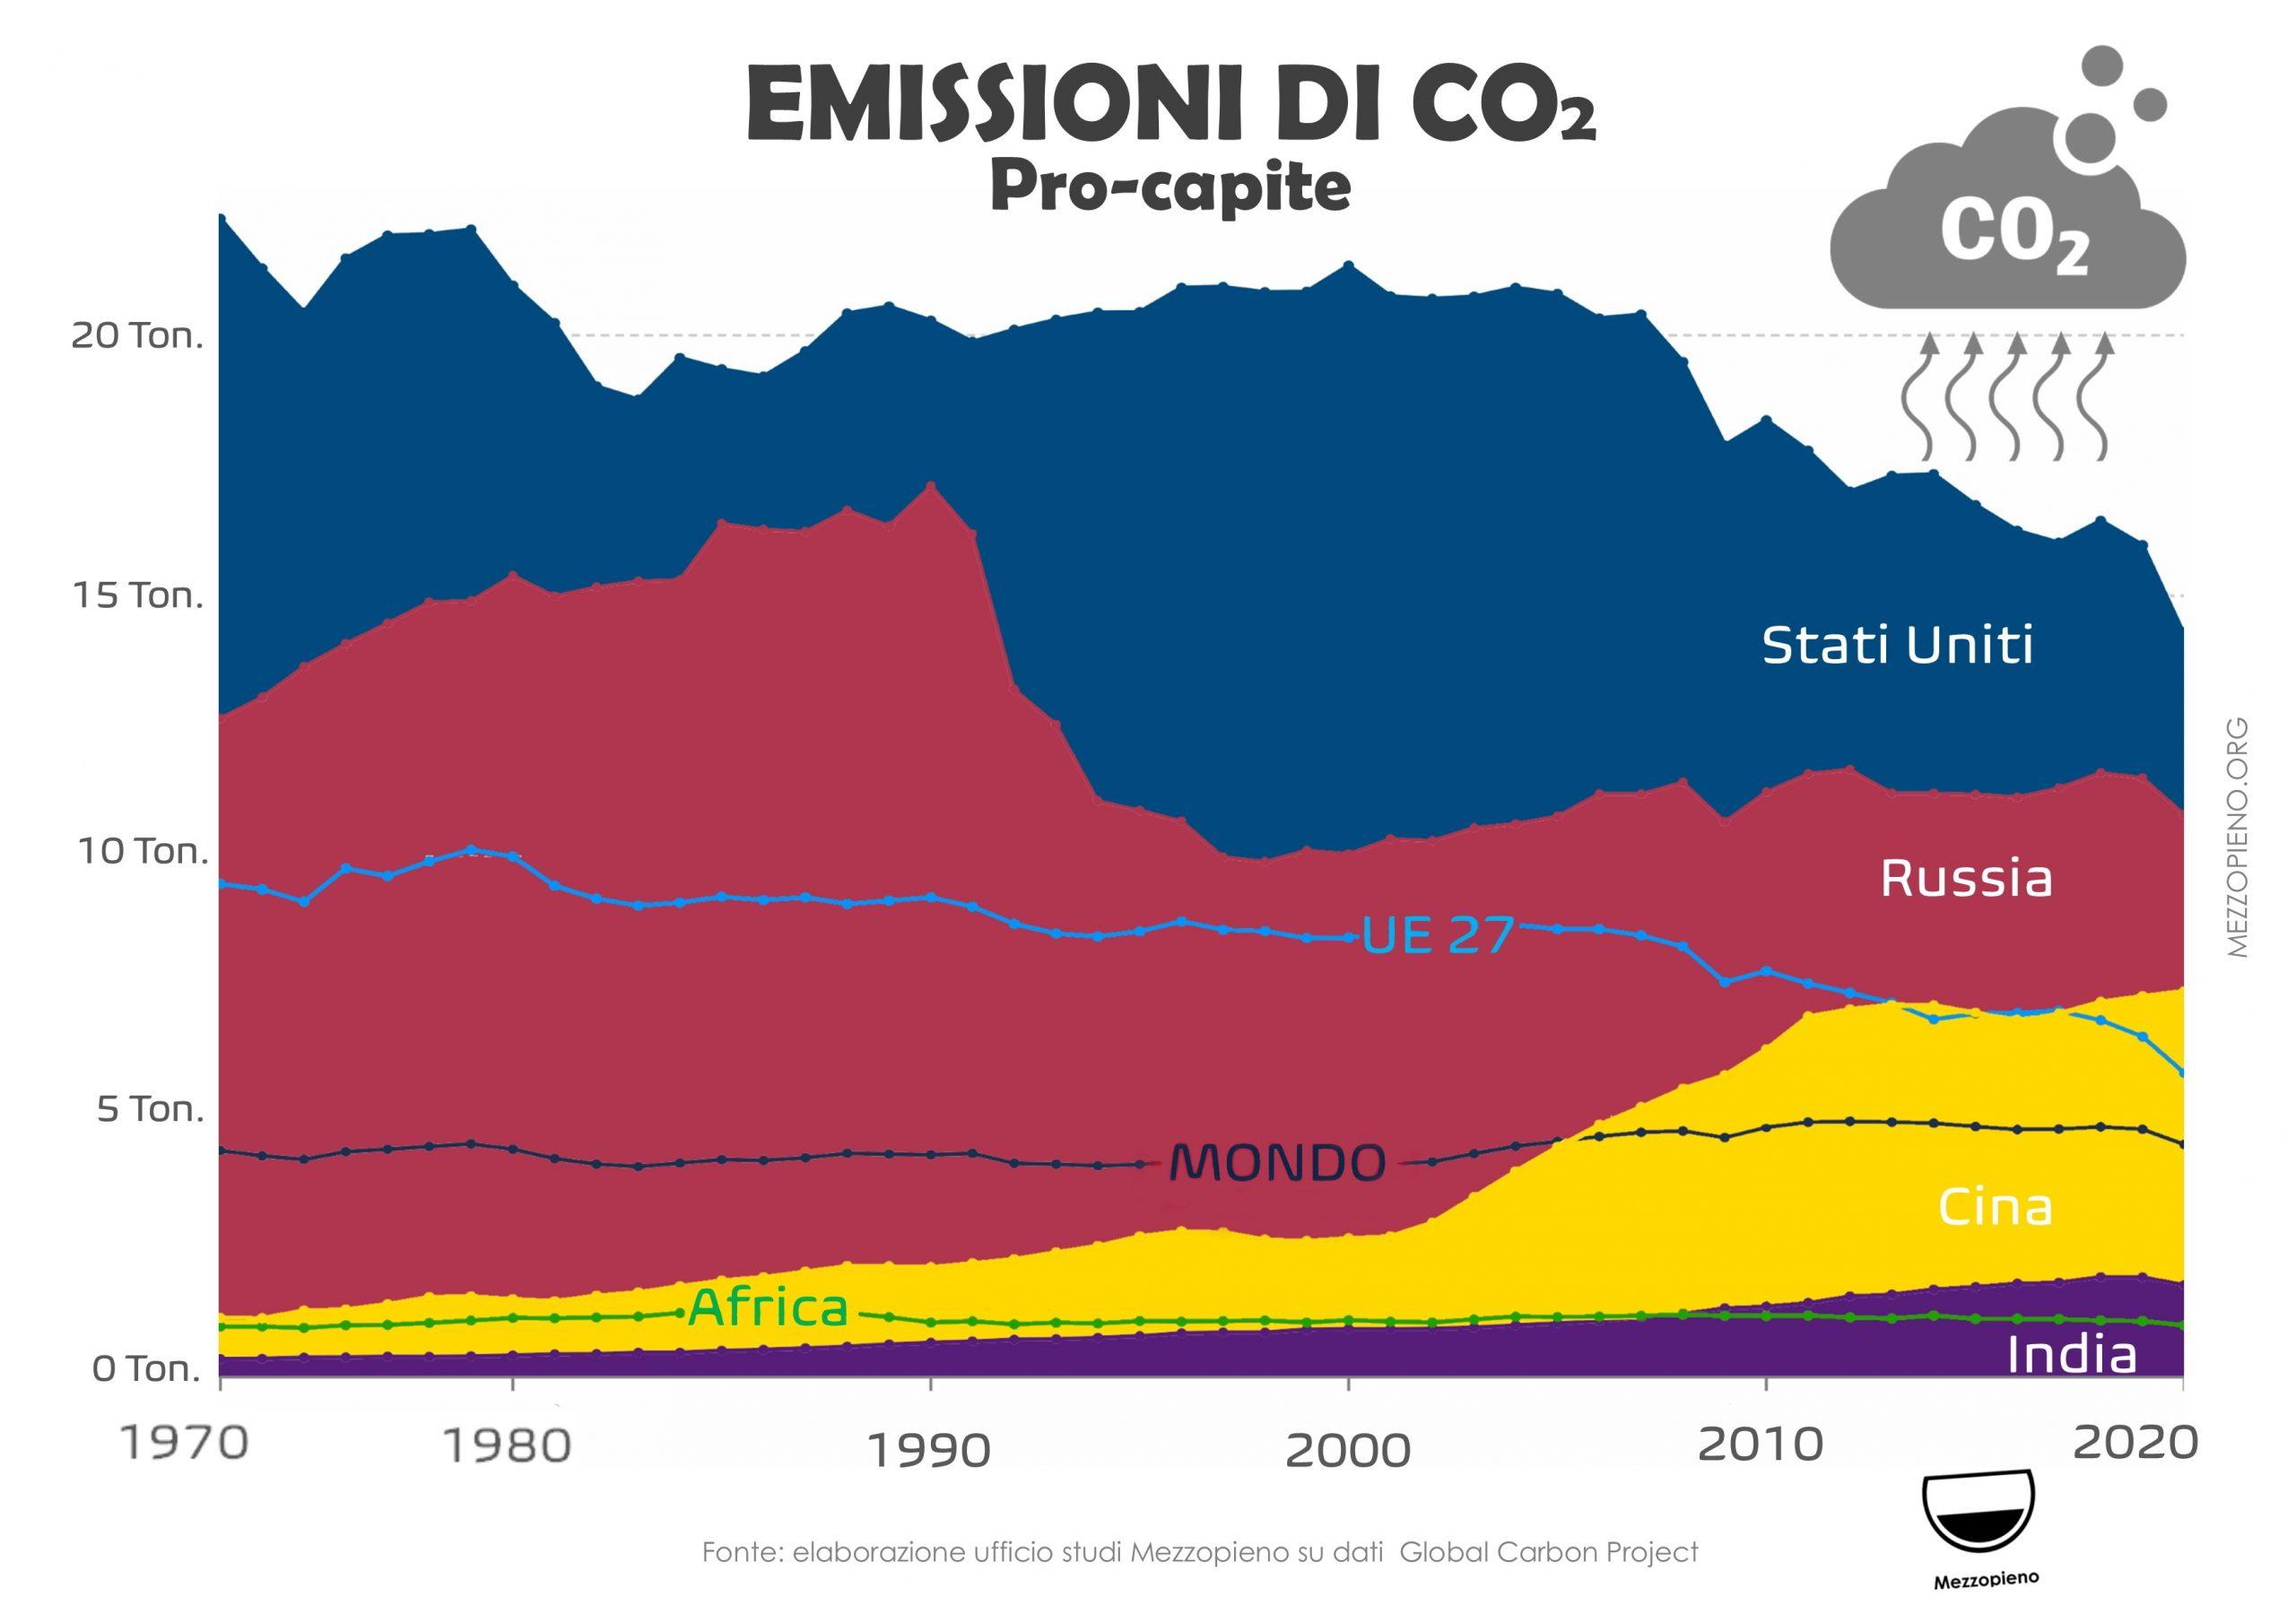 CALANO LE EMISSIONI PRO-CAPITE DI CO2 NEL MONDO